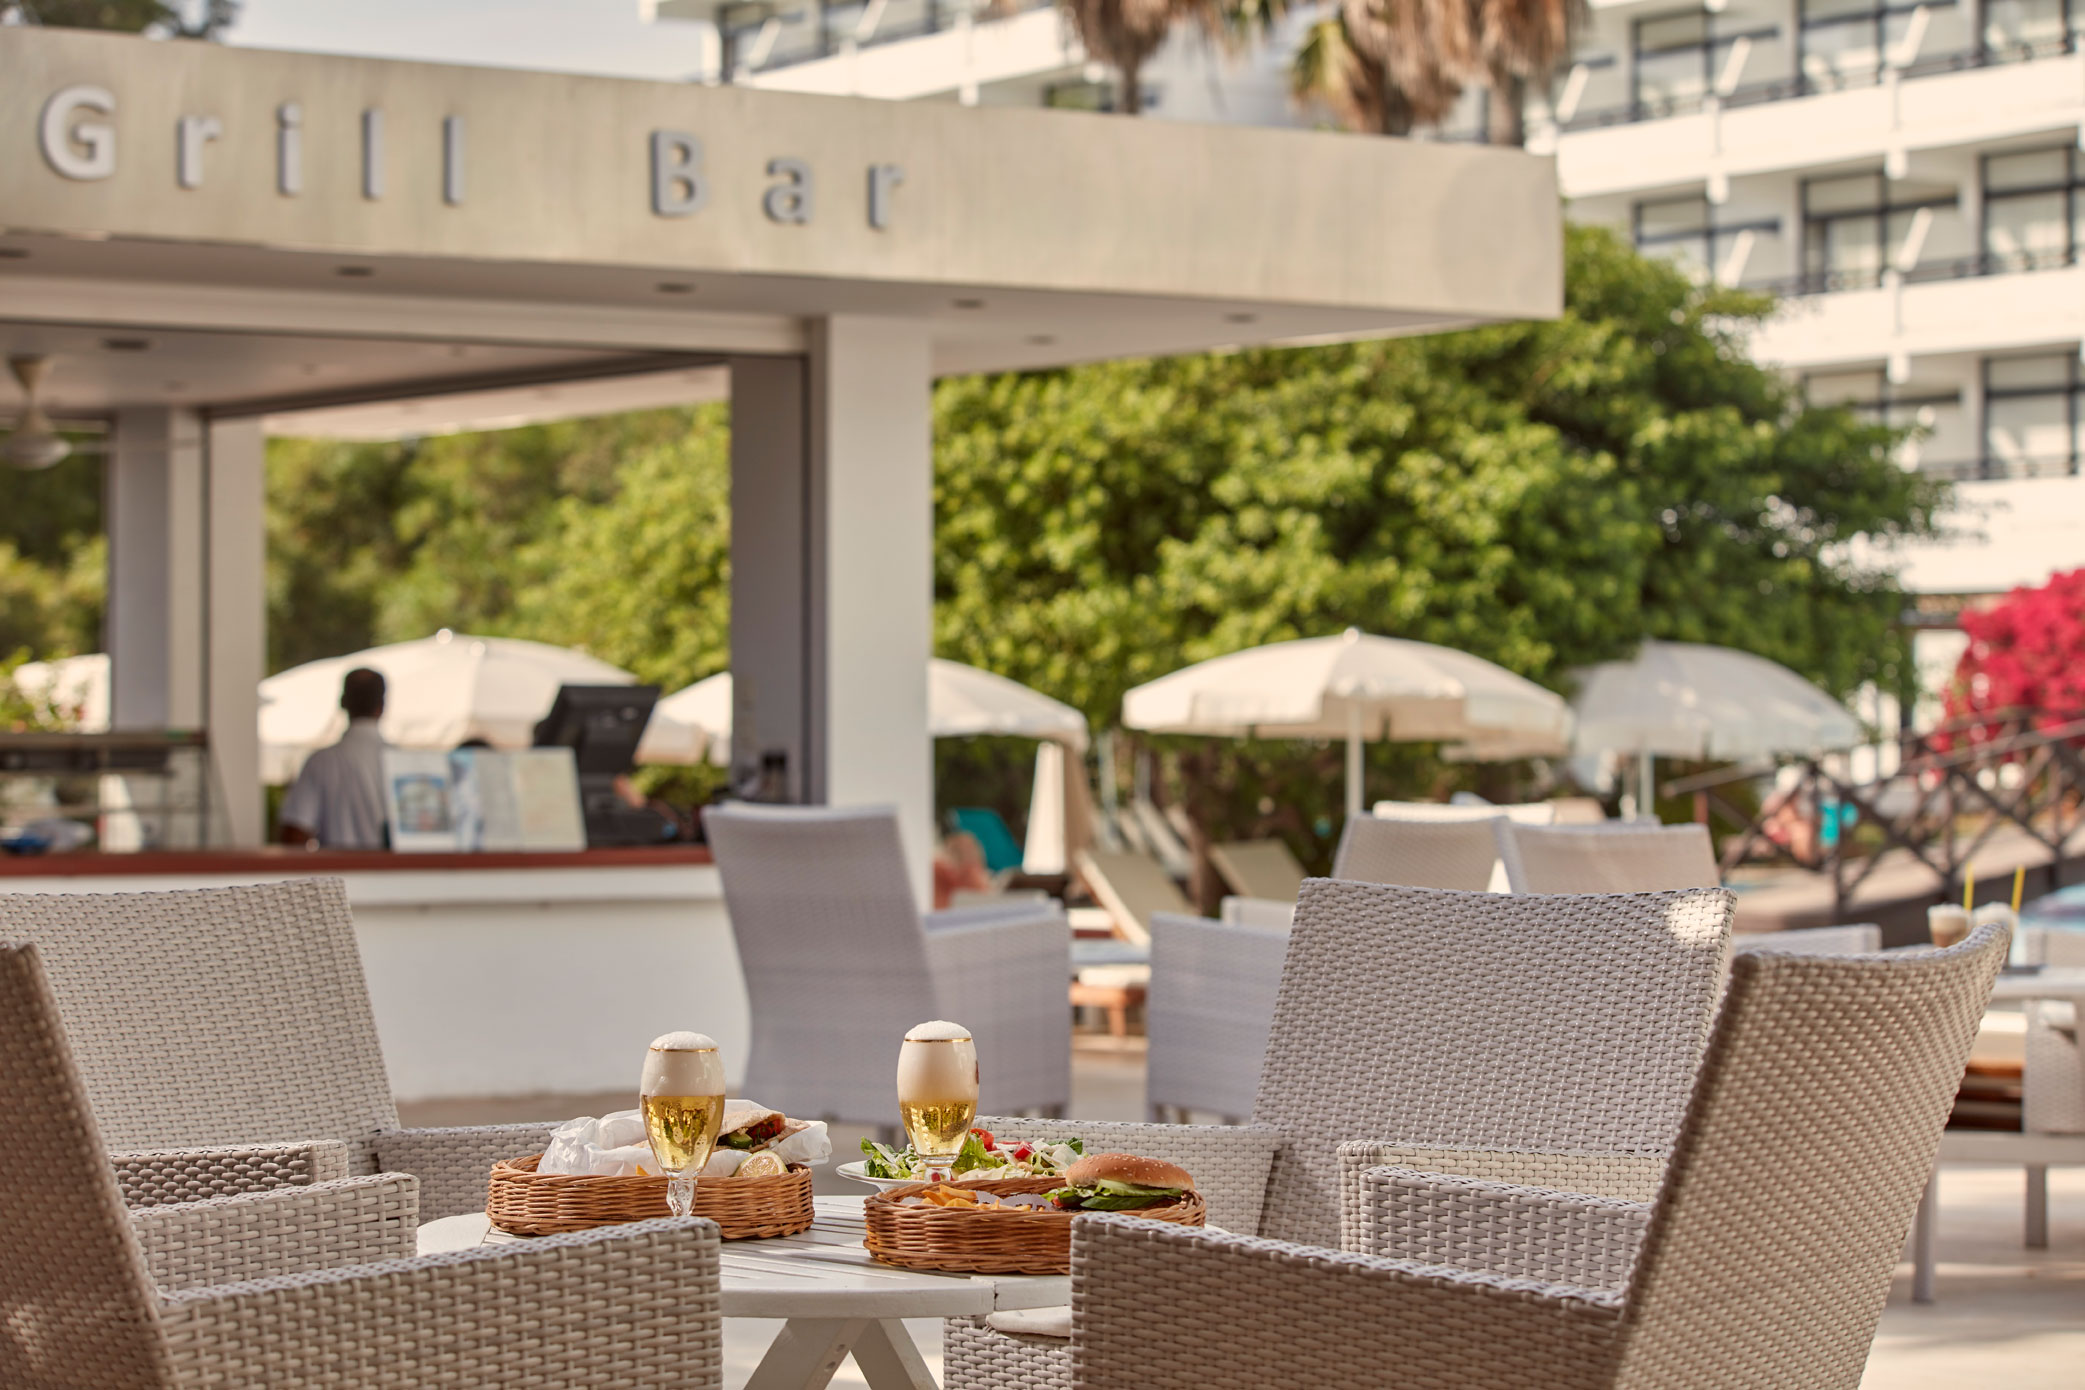 Grecian Bay Hotel-Grill bar.jpg